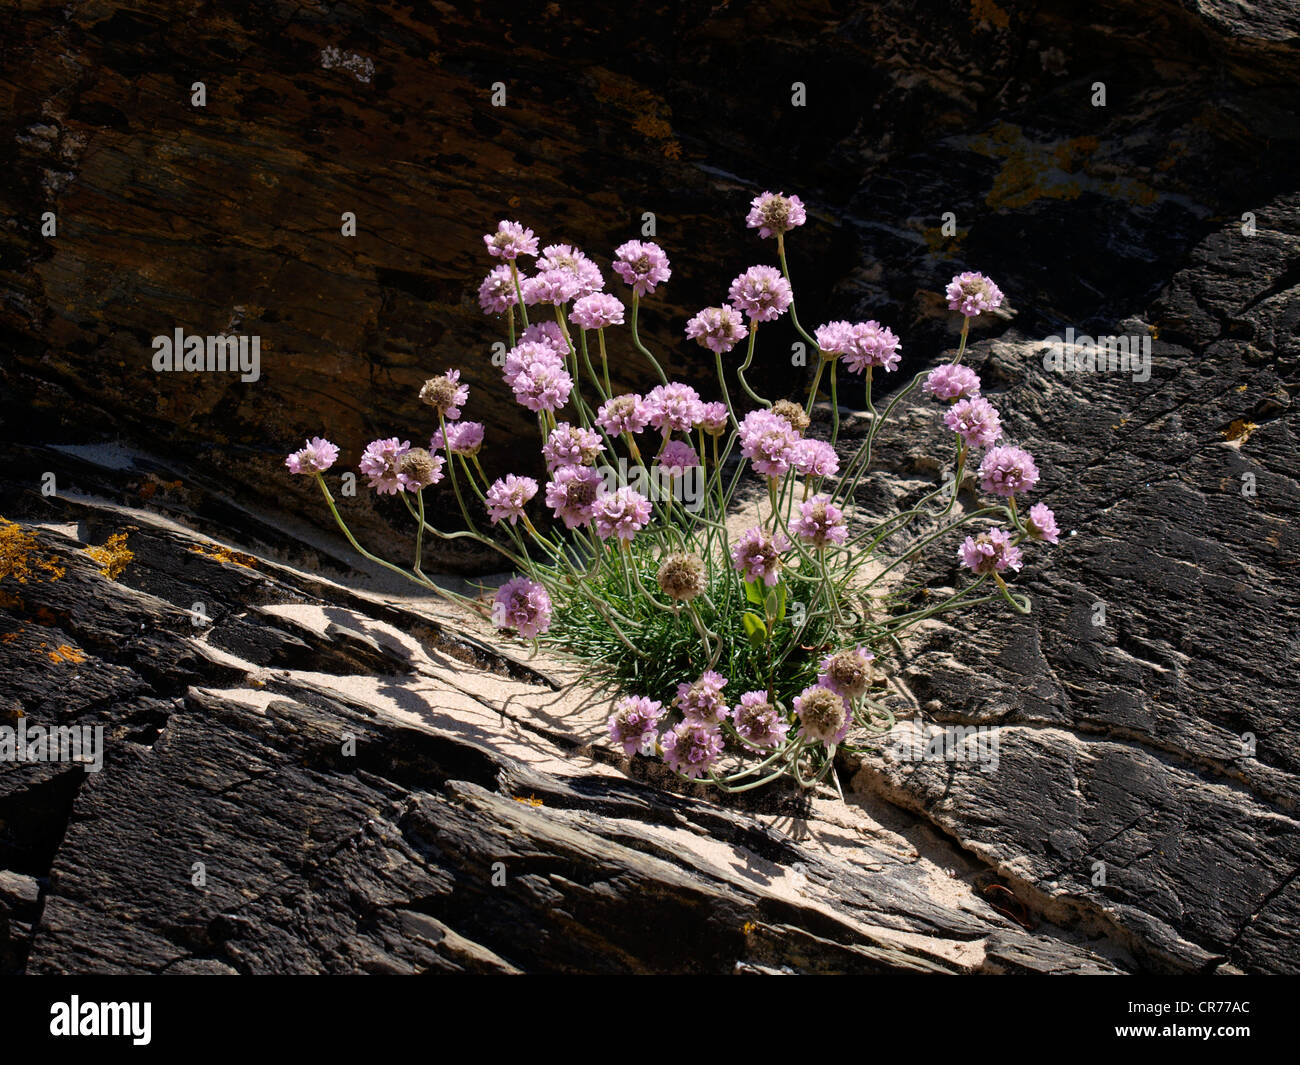 Sea pinks growing amongst rocks, Cornwall, UK Stock Photo